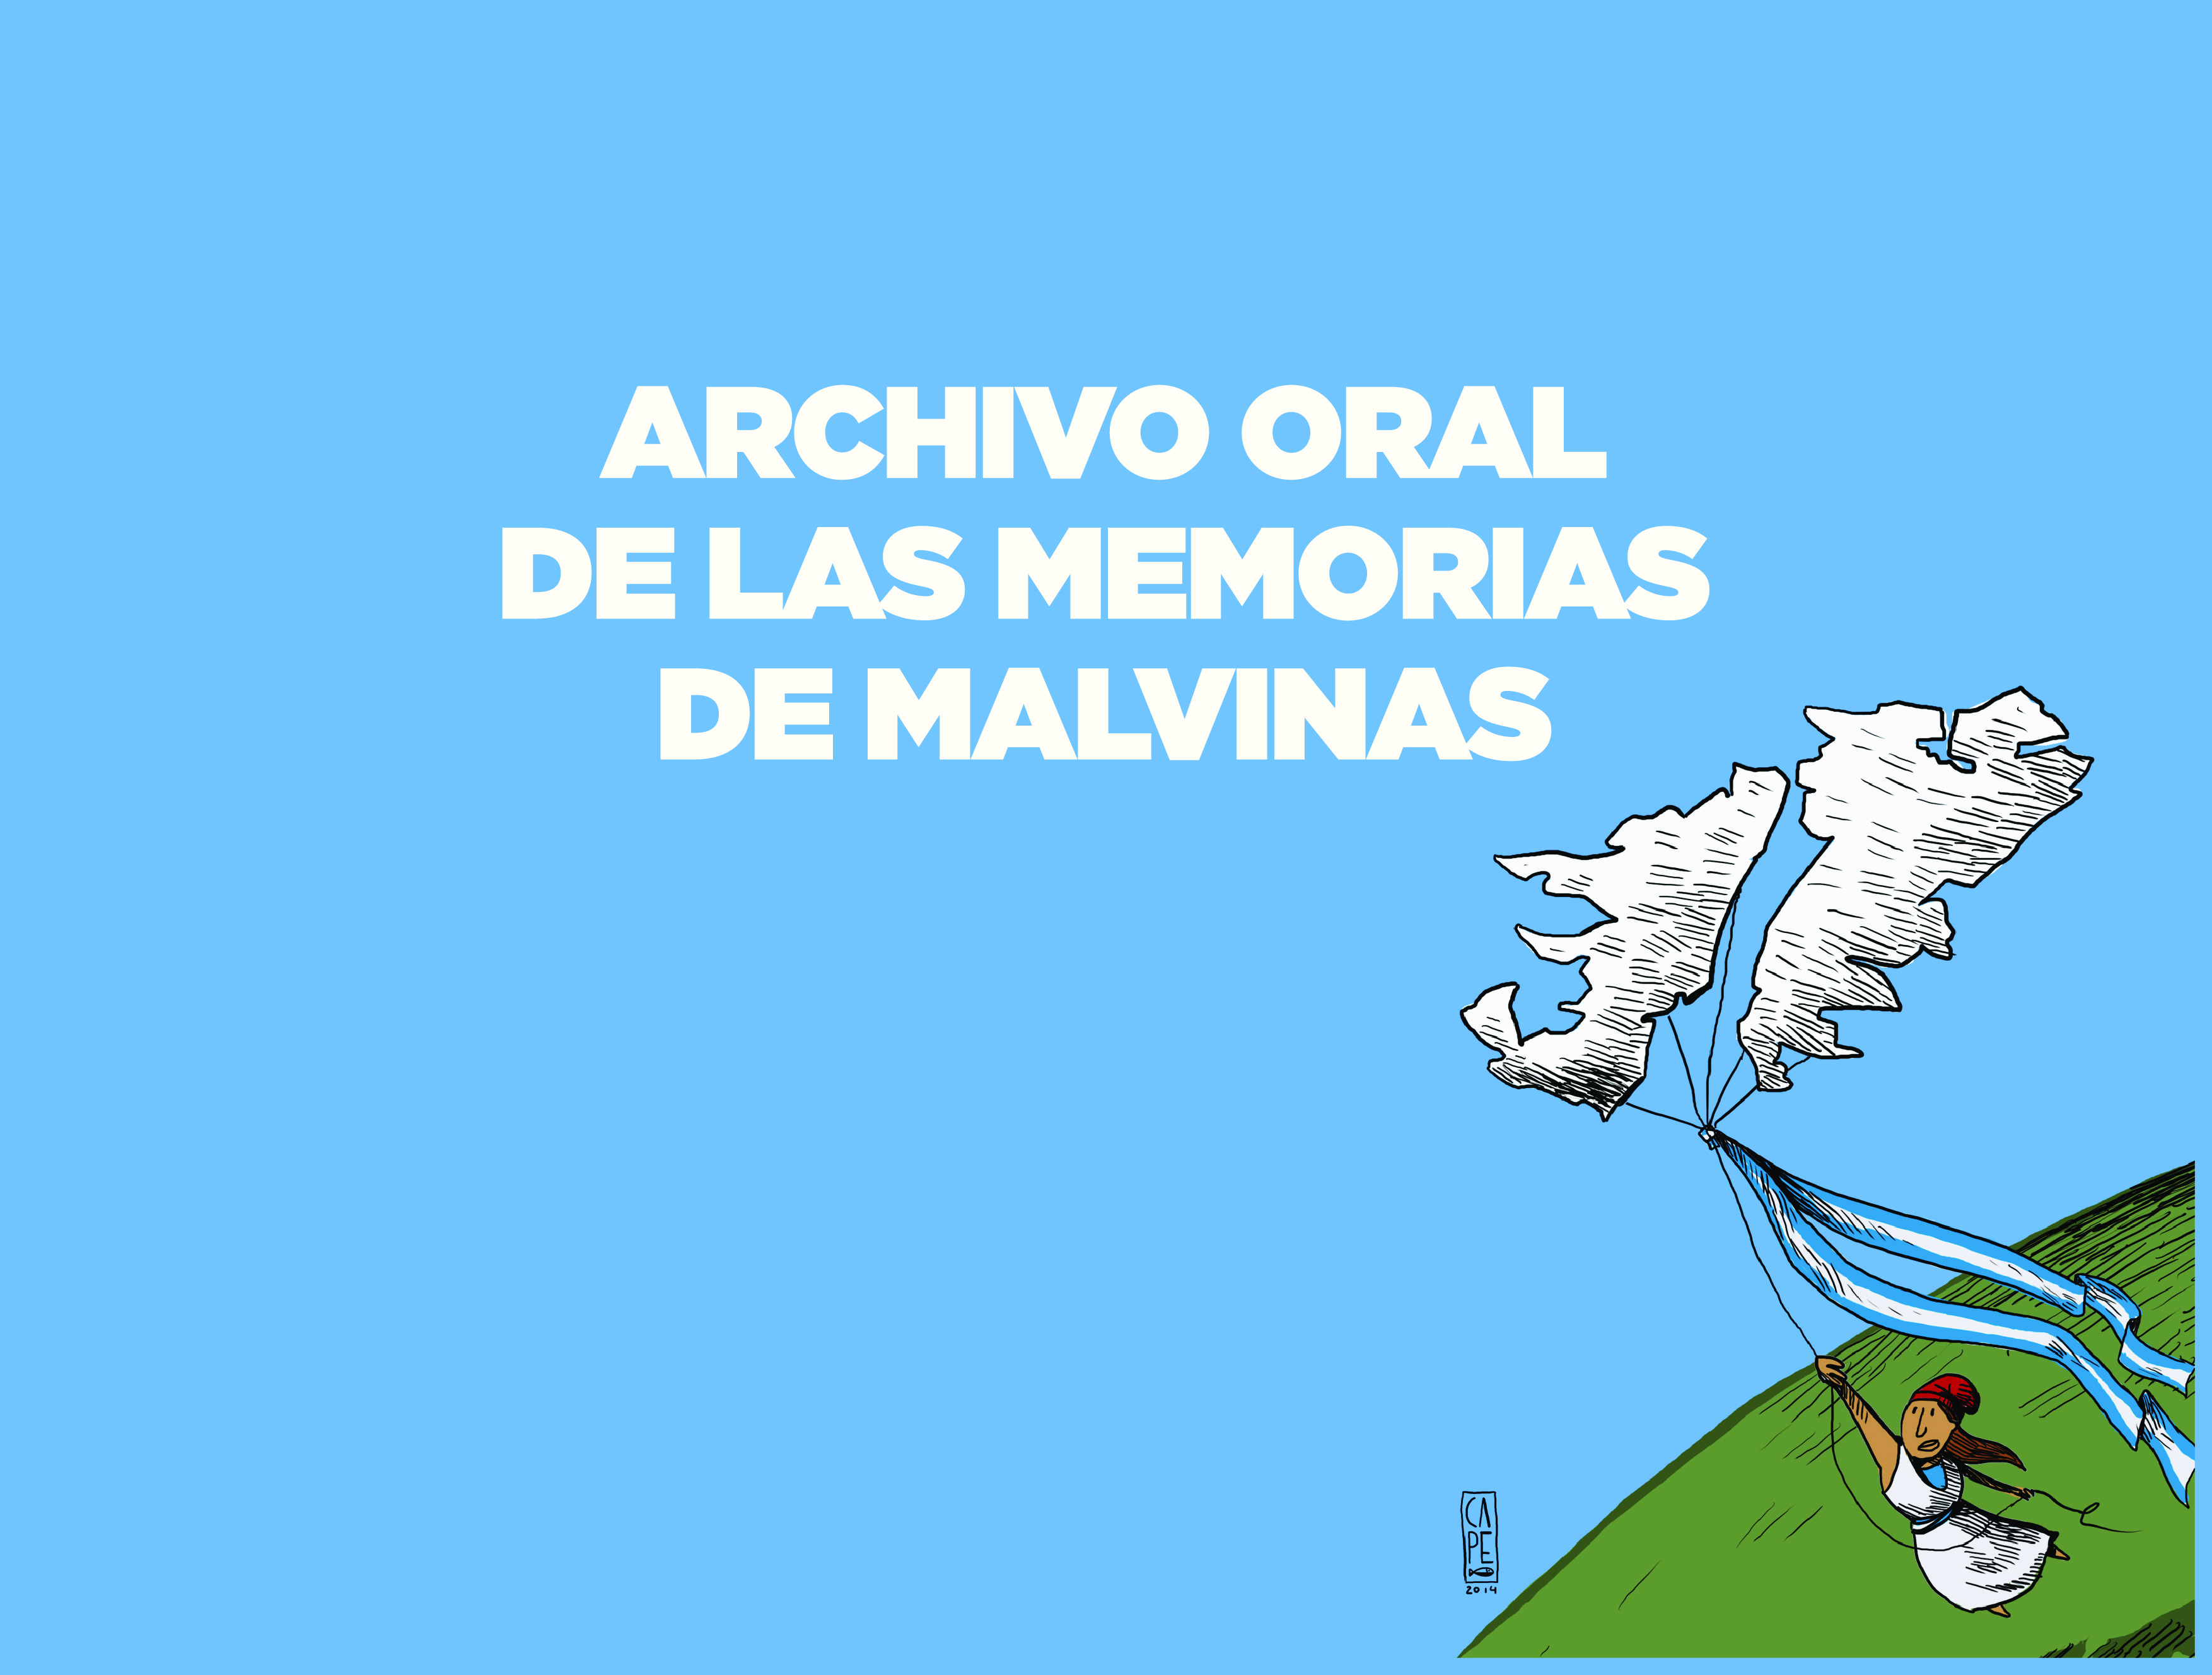  Creación Archivo Oral de las Memorias de Malvinas